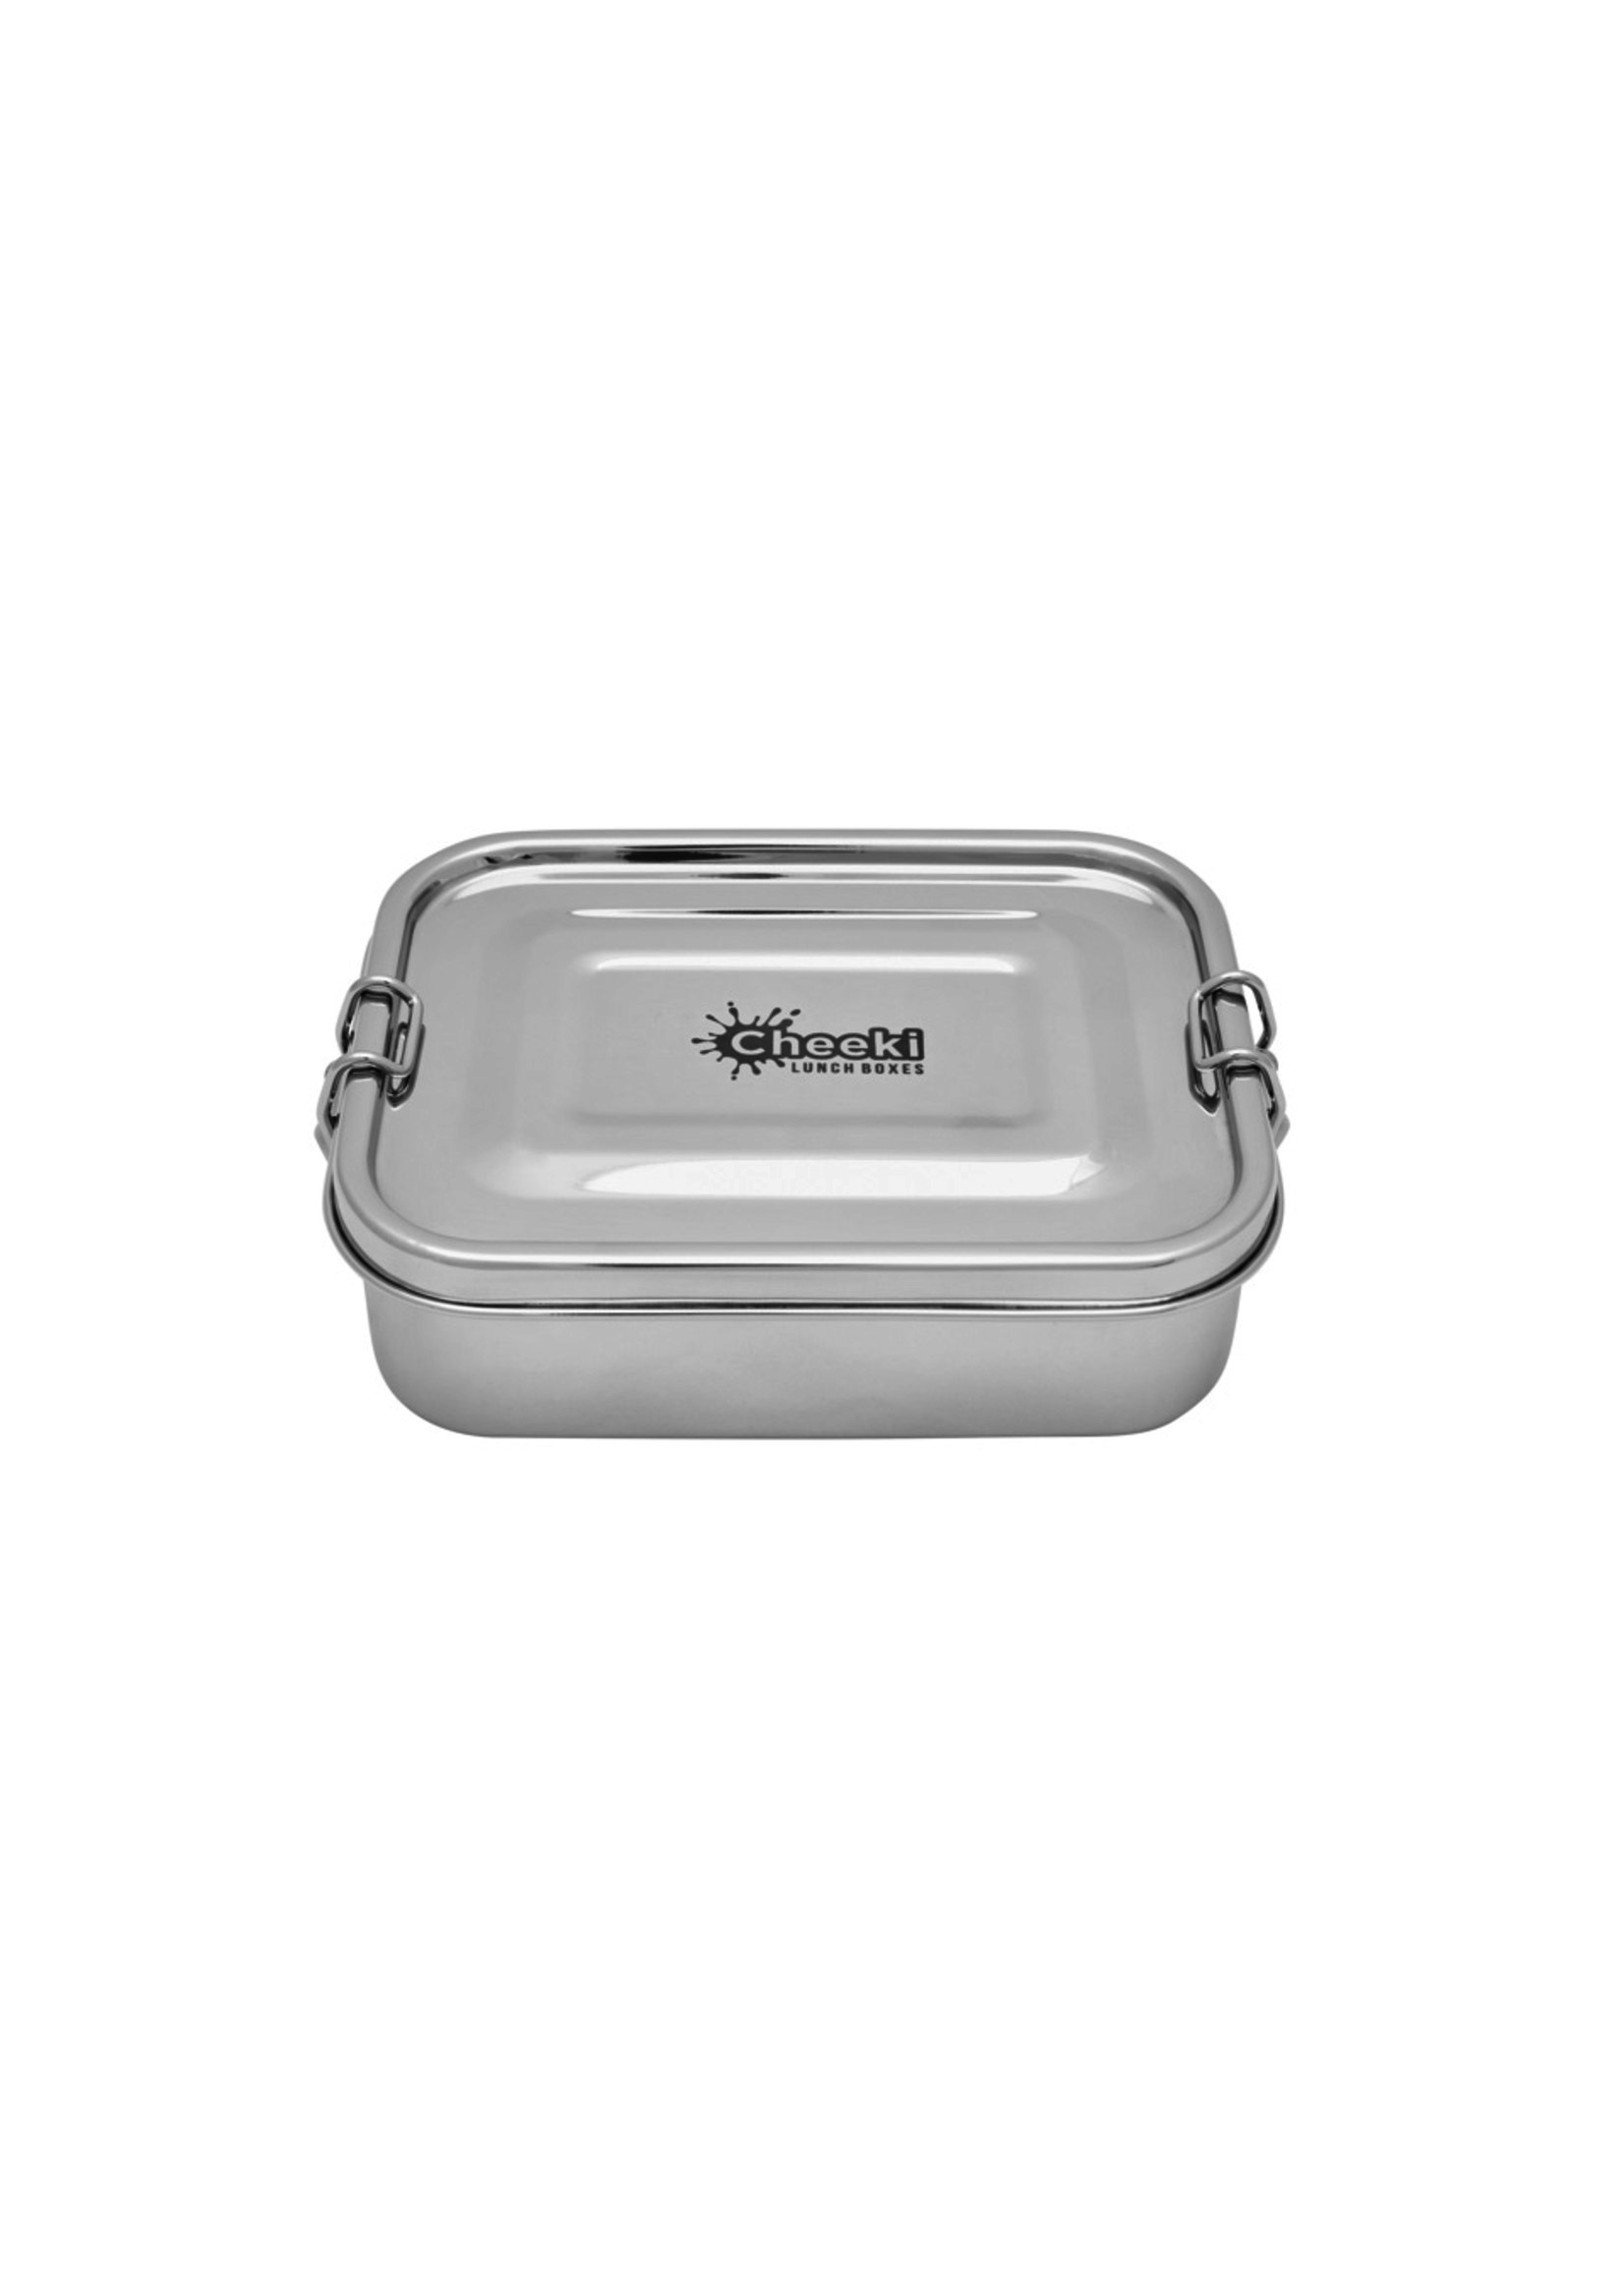 Cheeki Cheeki Stainless Steel Everyday LunchBox 800ml